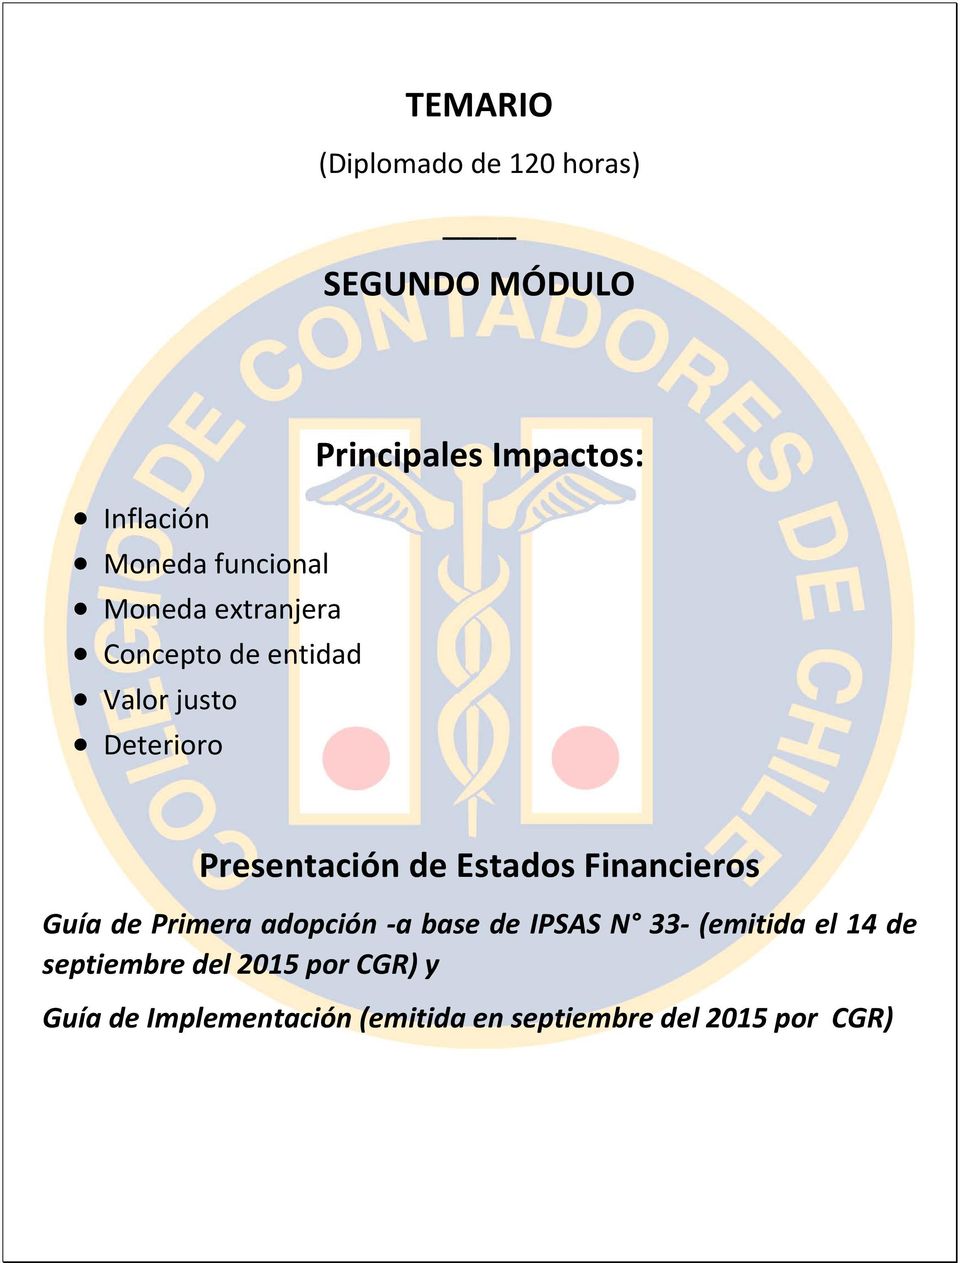 Financieros Guía de Primera adopción -a base de IPSAS N 33- (emitida el 14 de